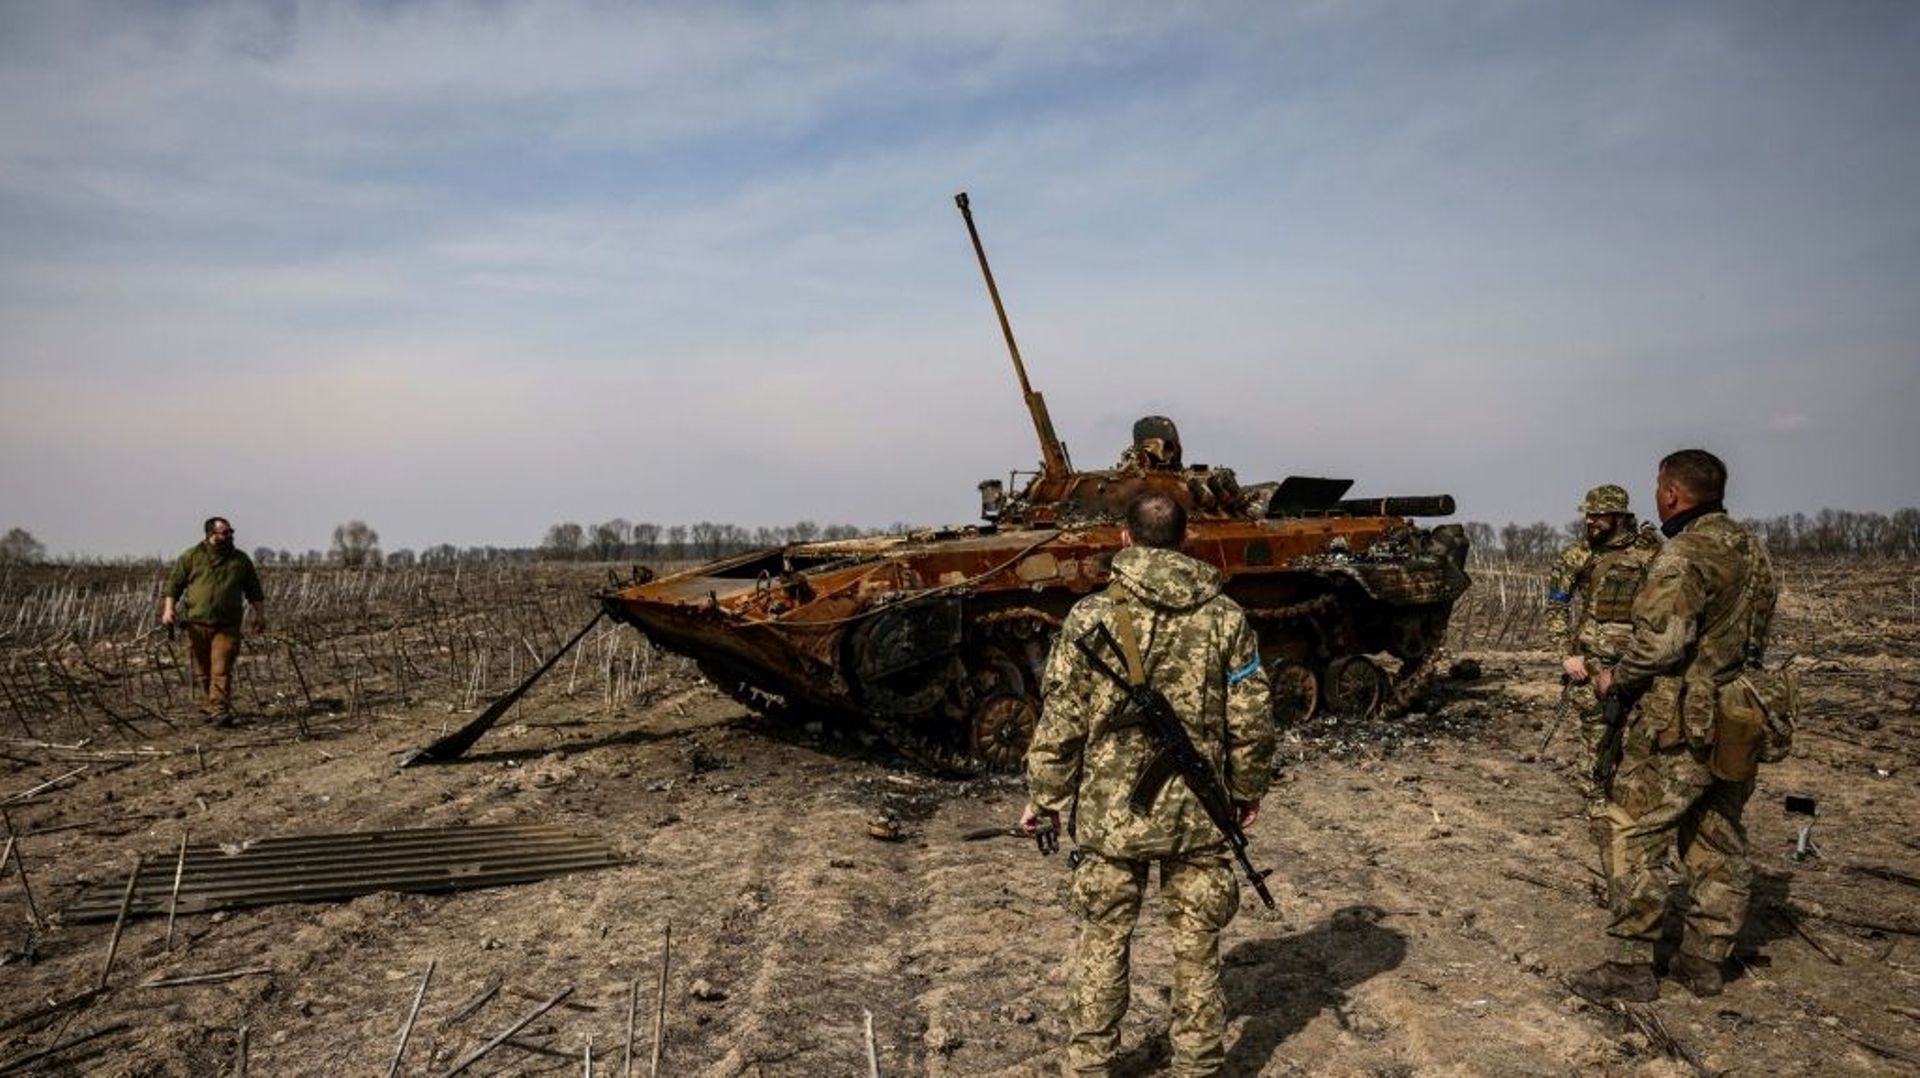 Des soldats ukrainiens se tiennent près d'un tank russe calciné le 31 mars 2022 dans la banlieue de Kiev